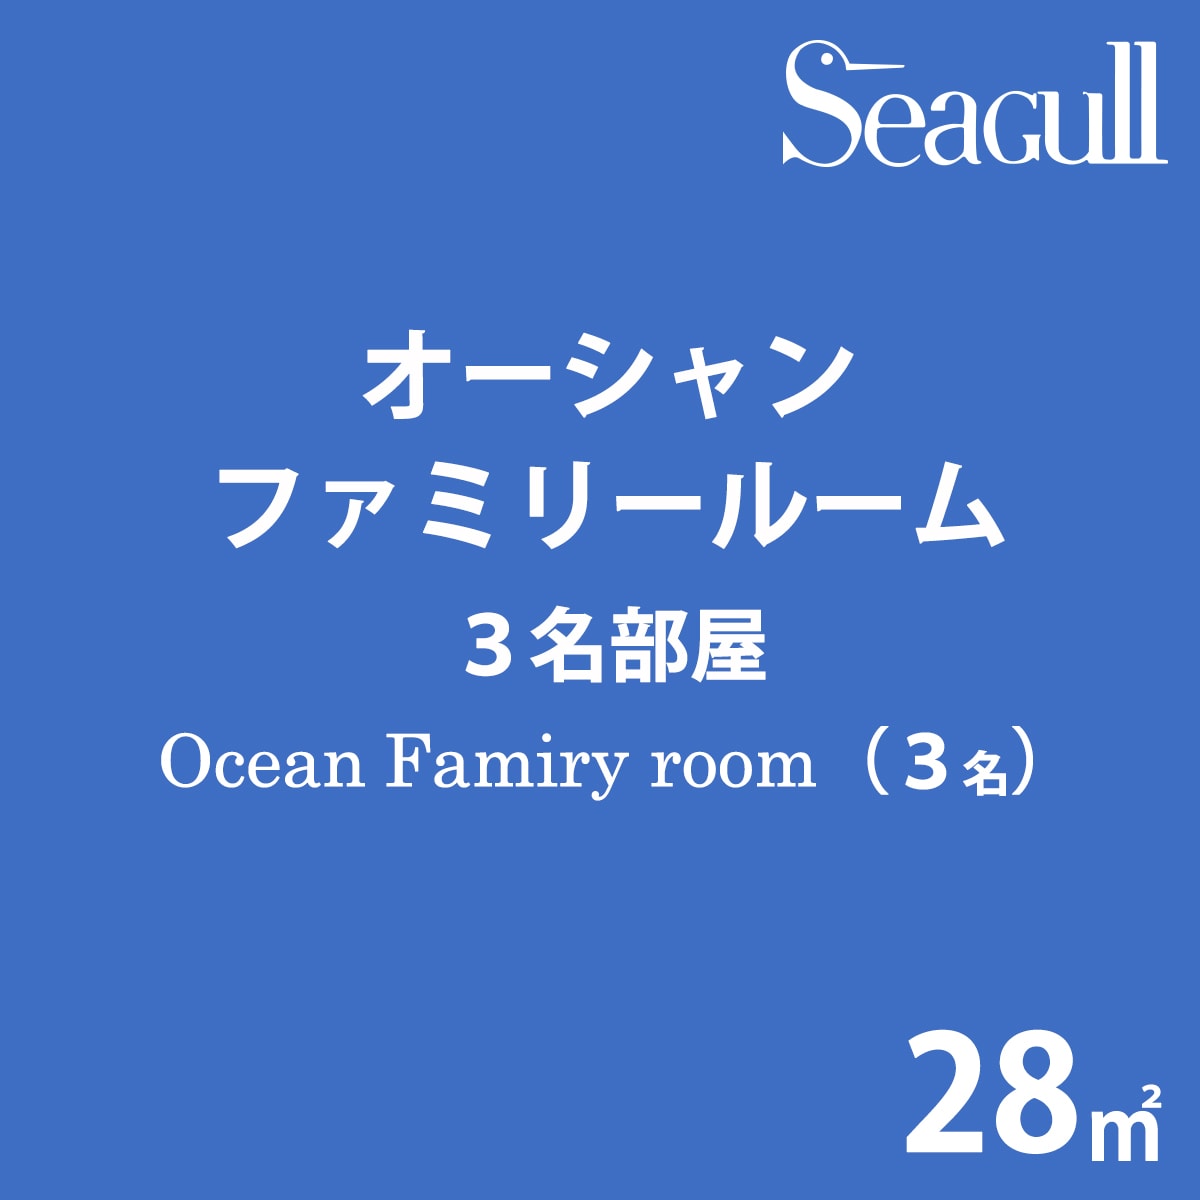 Ocean family room